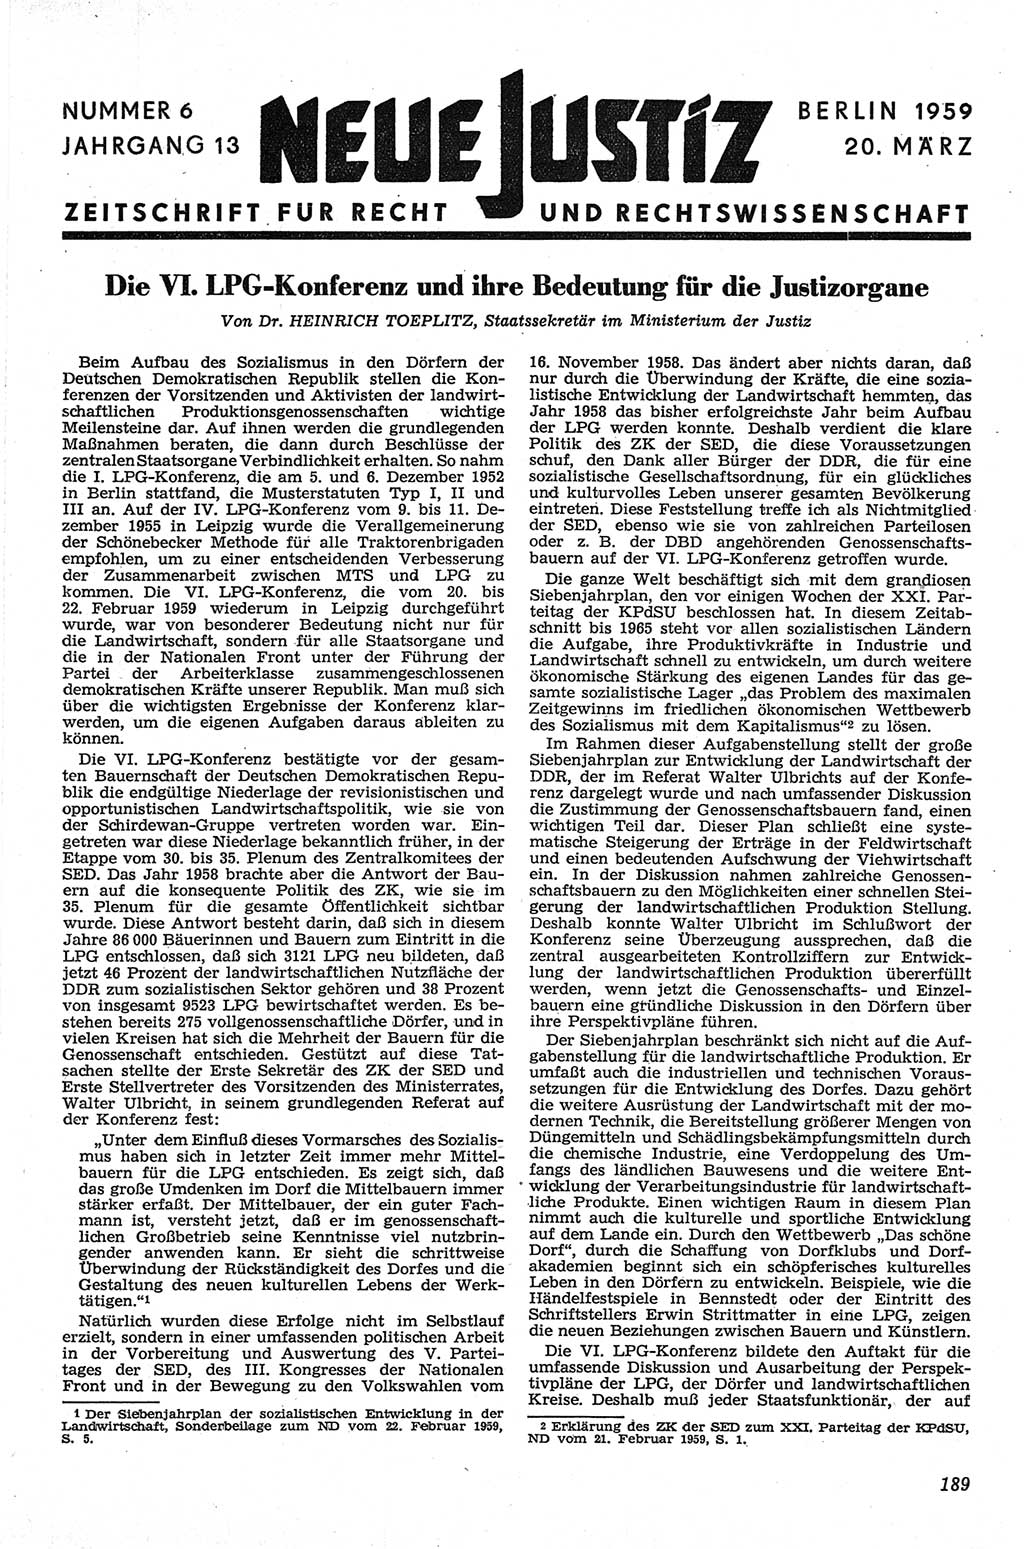 Neue Justiz (NJ), Zeitschrift für Recht und Rechtswissenschaft [Deutsche Demokratische Republik (DDR)], 13. Jahrgang 1959, Seite 189 (NJ DDR 1959, S. 189)